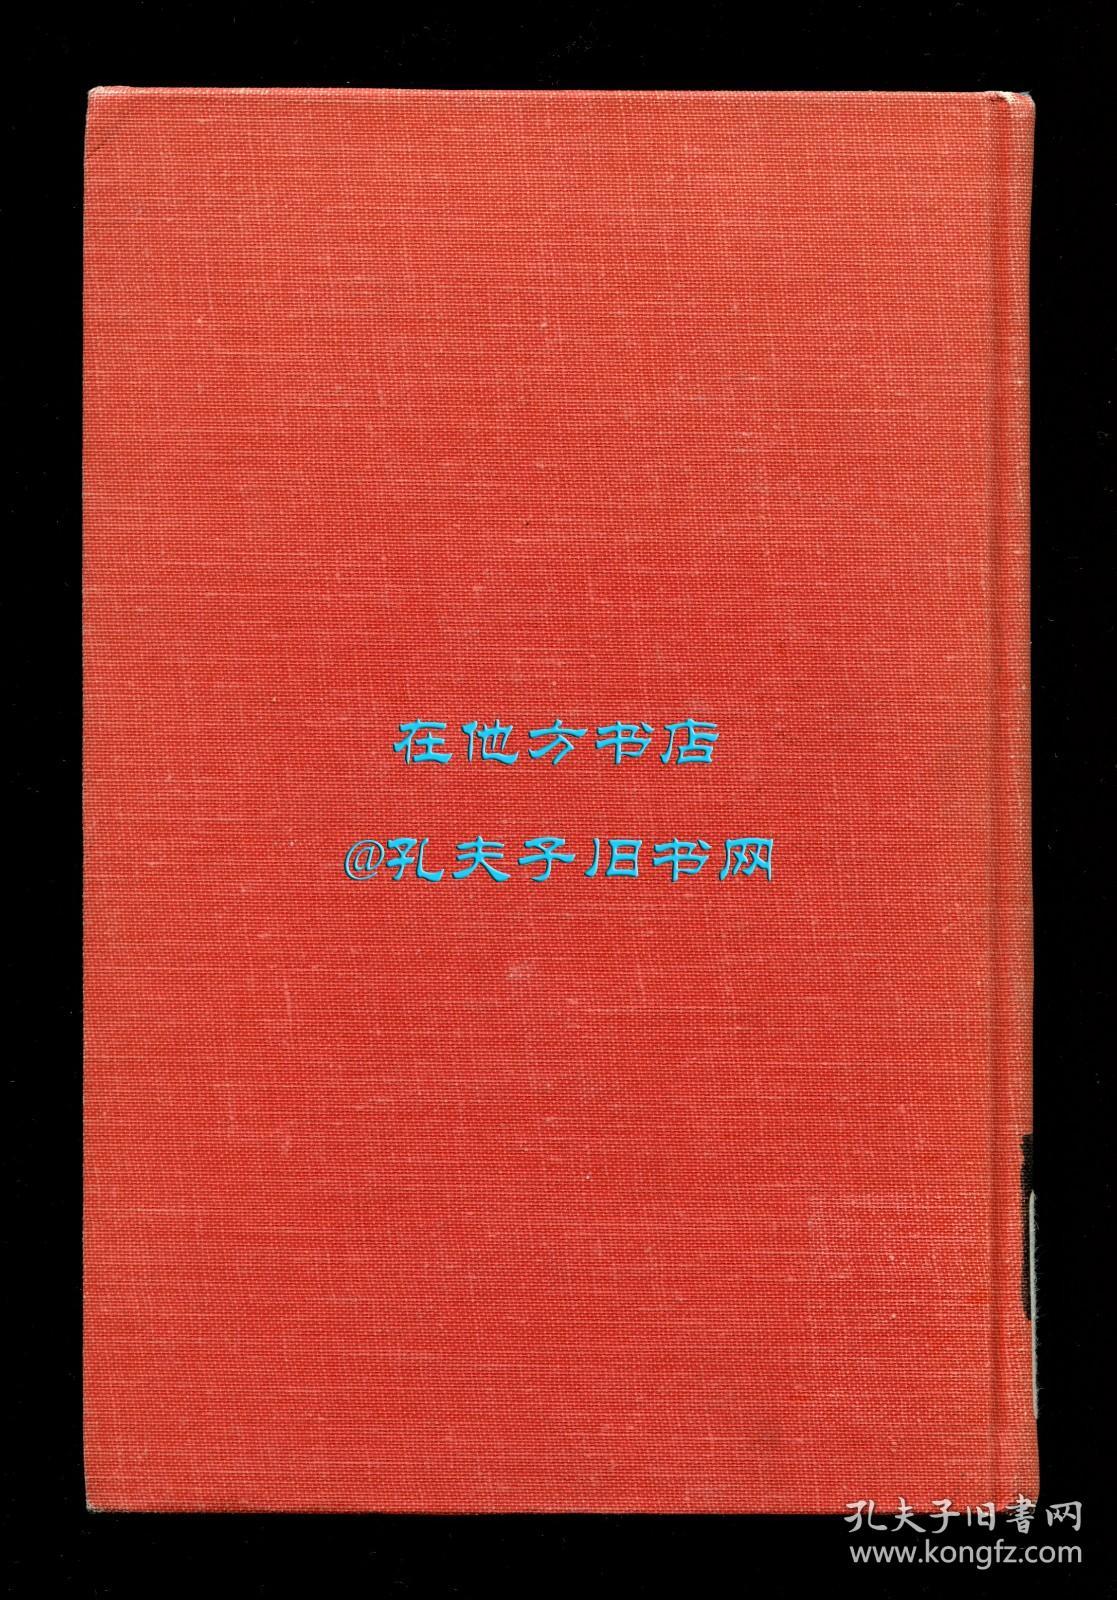 海波士《沪江大学校史》（History of the University of Shanghai），中国近现代教育史料，1964年初版精装，馆藏